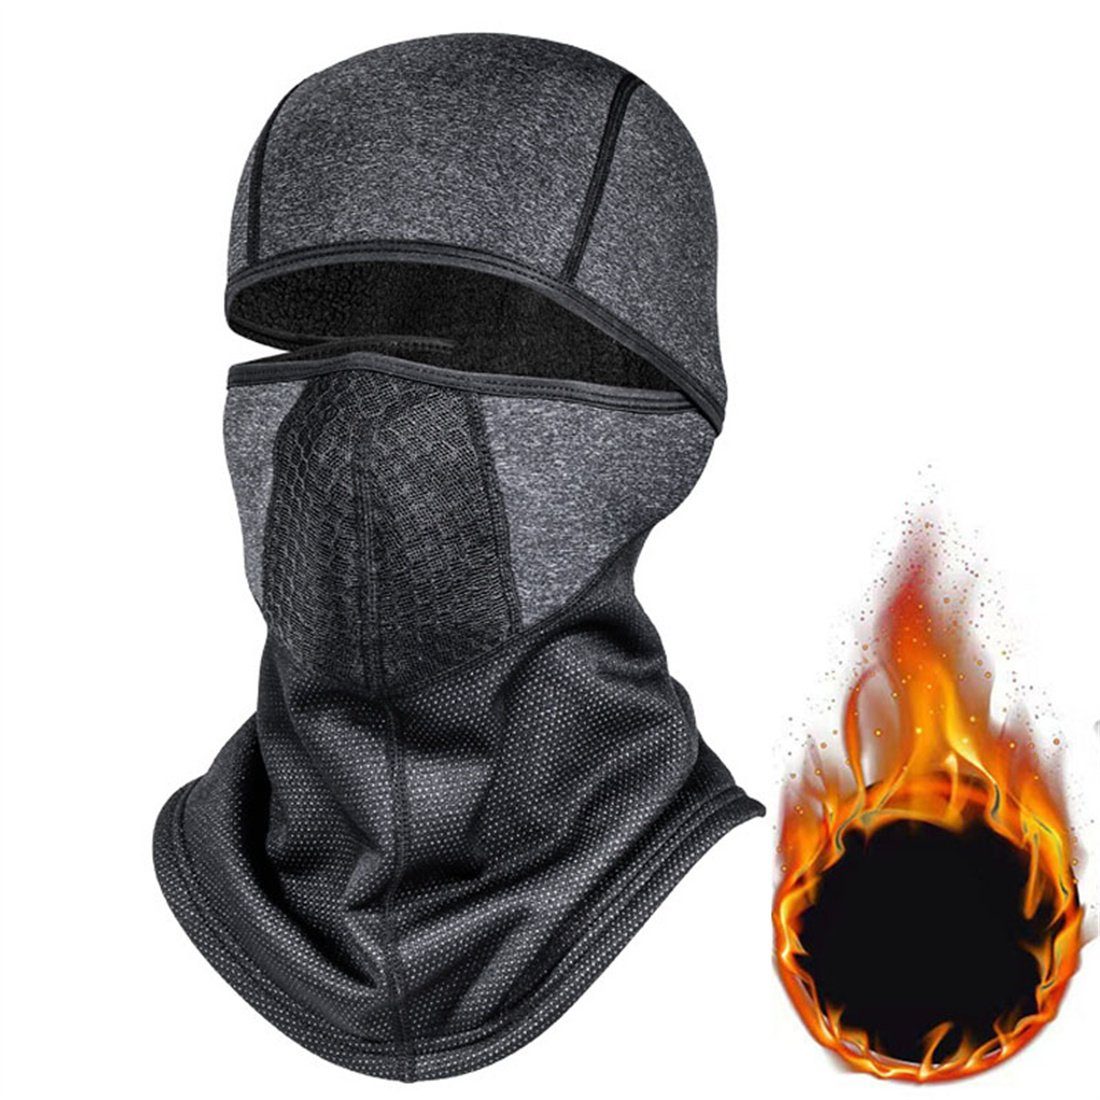 Outdoor-Radfahren Sturmhaube Halsschutz Kopfbedeckung, Winter-Ski-Maske, unisex dunkelgrau DÖRÖY